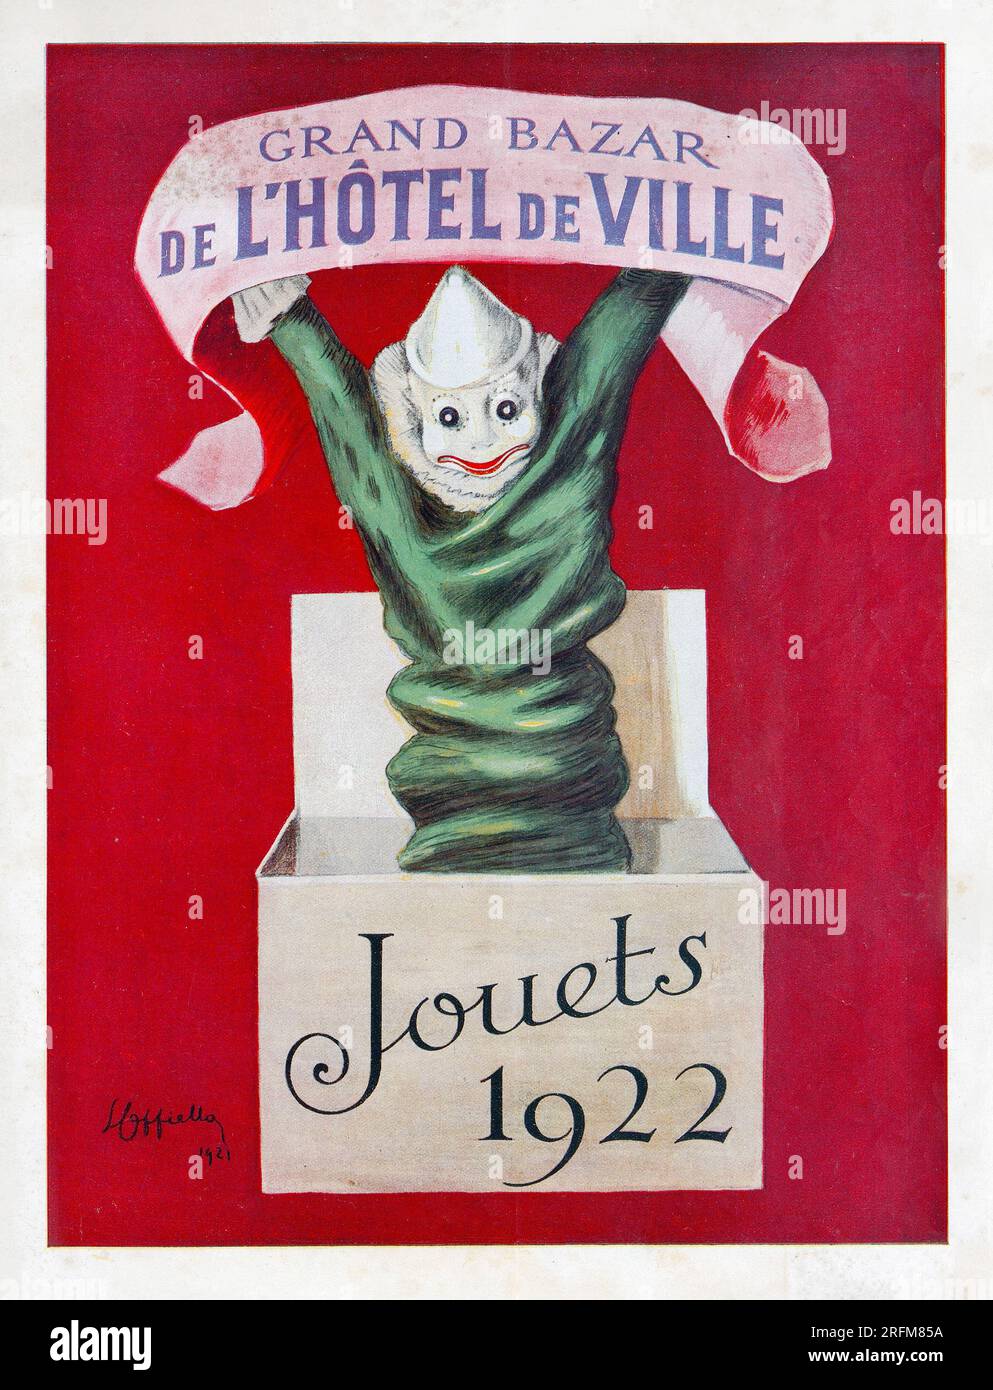 Toys Catalogue cover - Bazar de l'Hôtel de Ville - Jouets 1922 ...